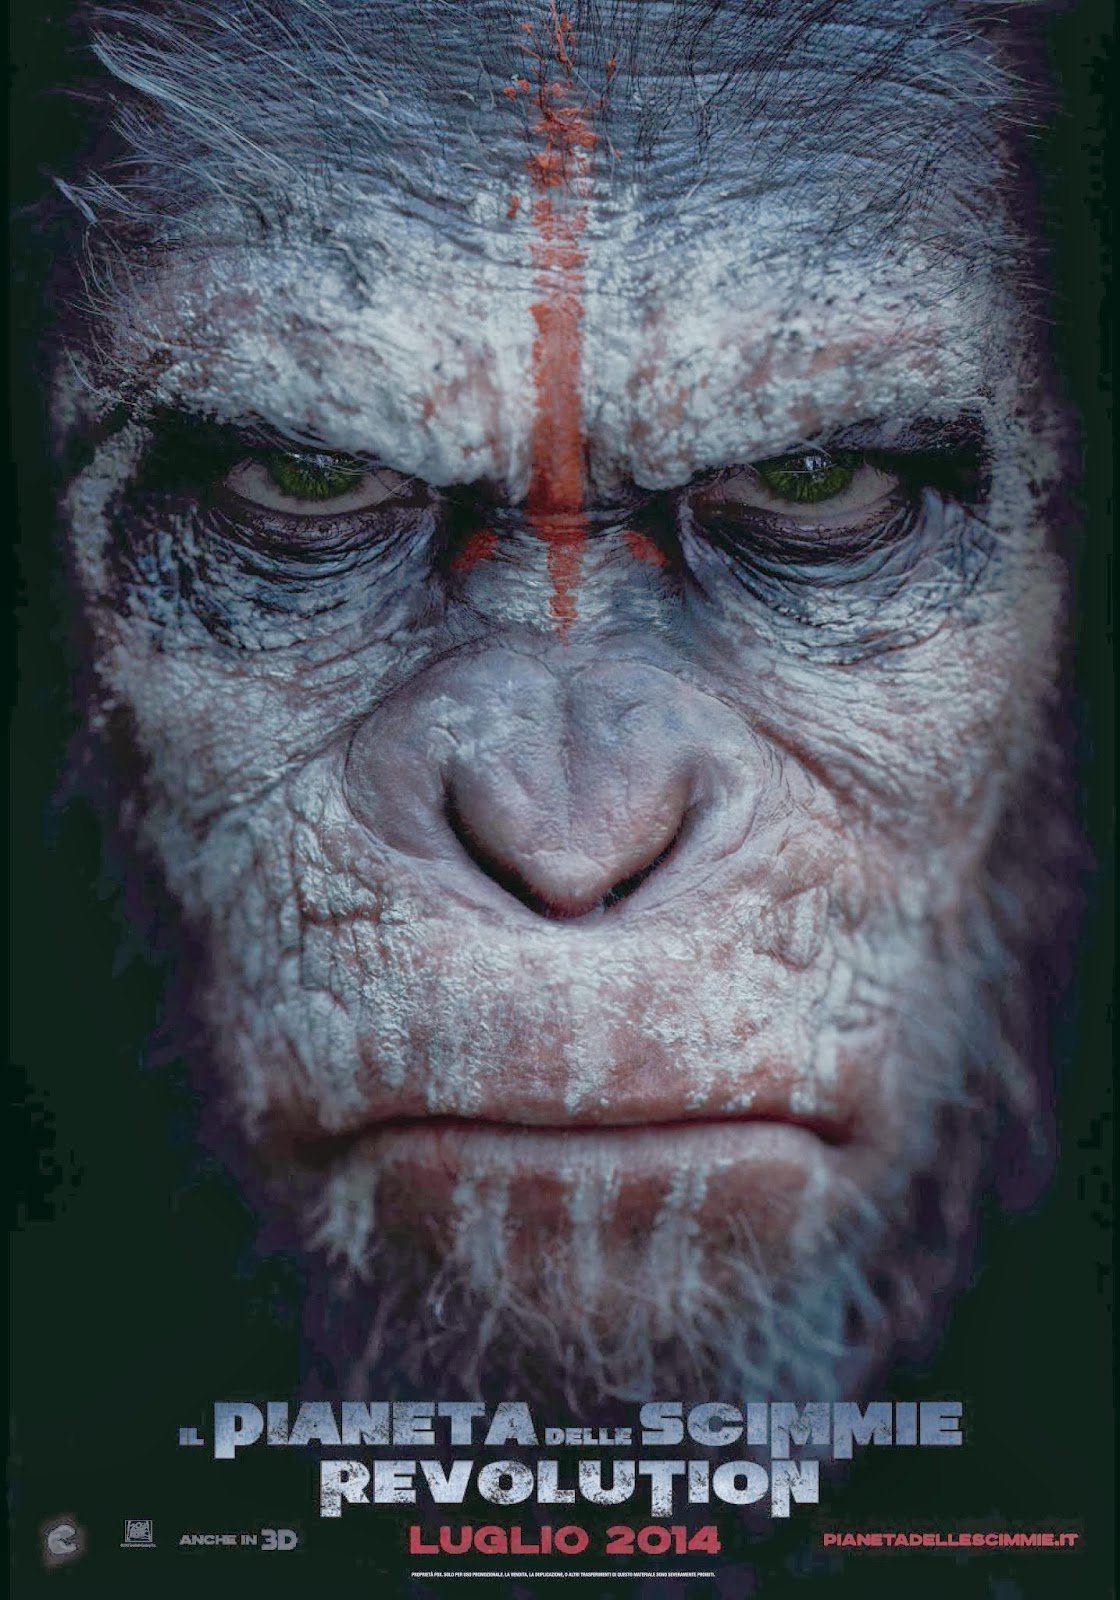 Apes Revolution - Il pianeta delle scimmie song free download